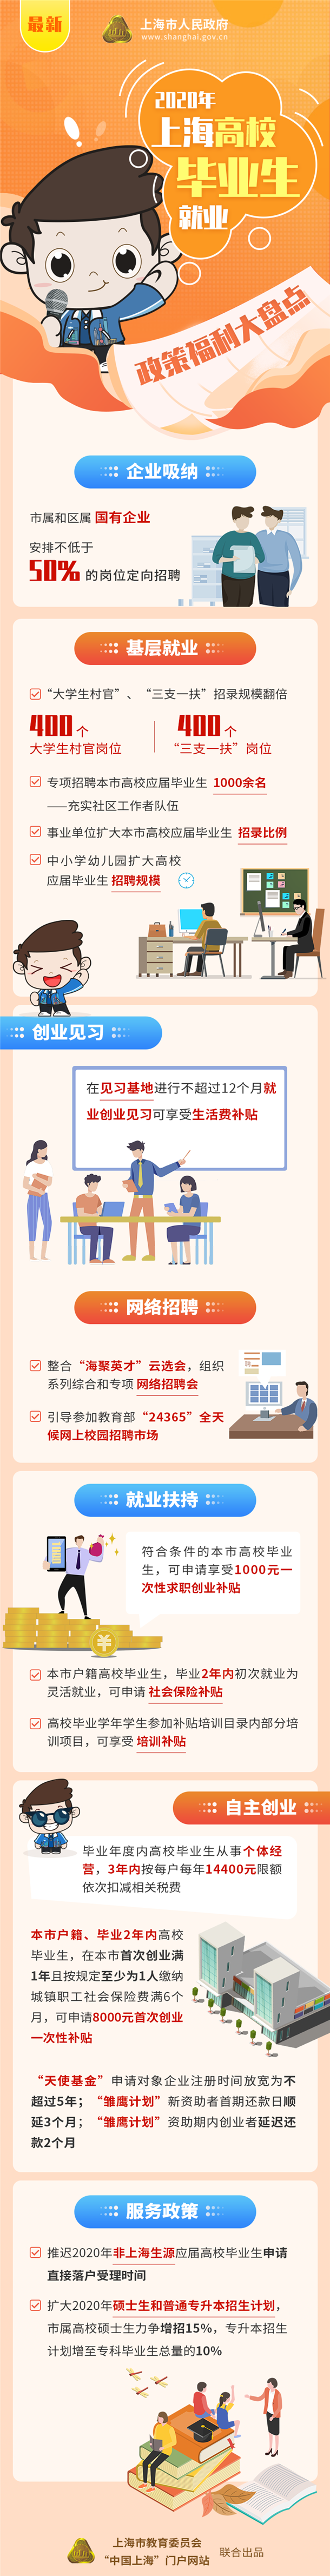 2020年上海高校毕业生就业政策福利大盘点